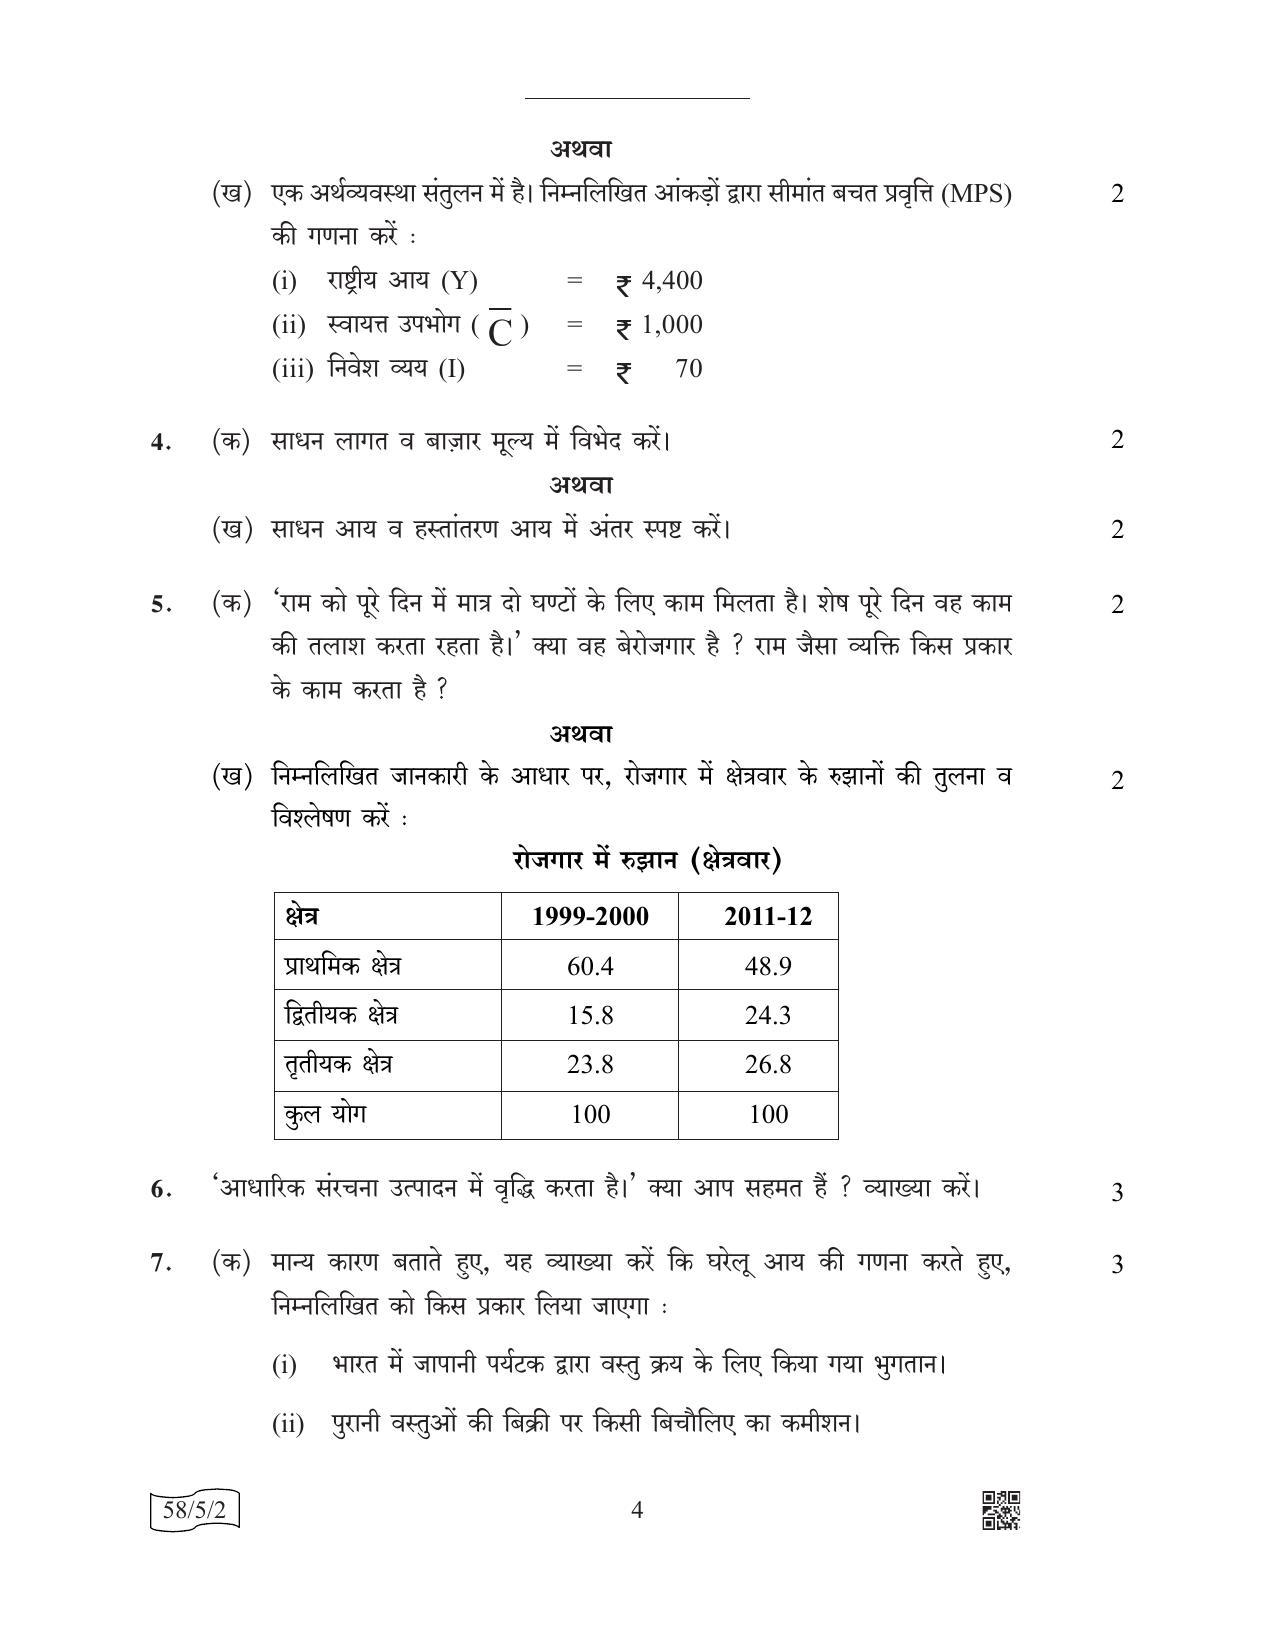 CBSE Class 12 58-5-2 (Economics) 2022 Question Paper - Page 4